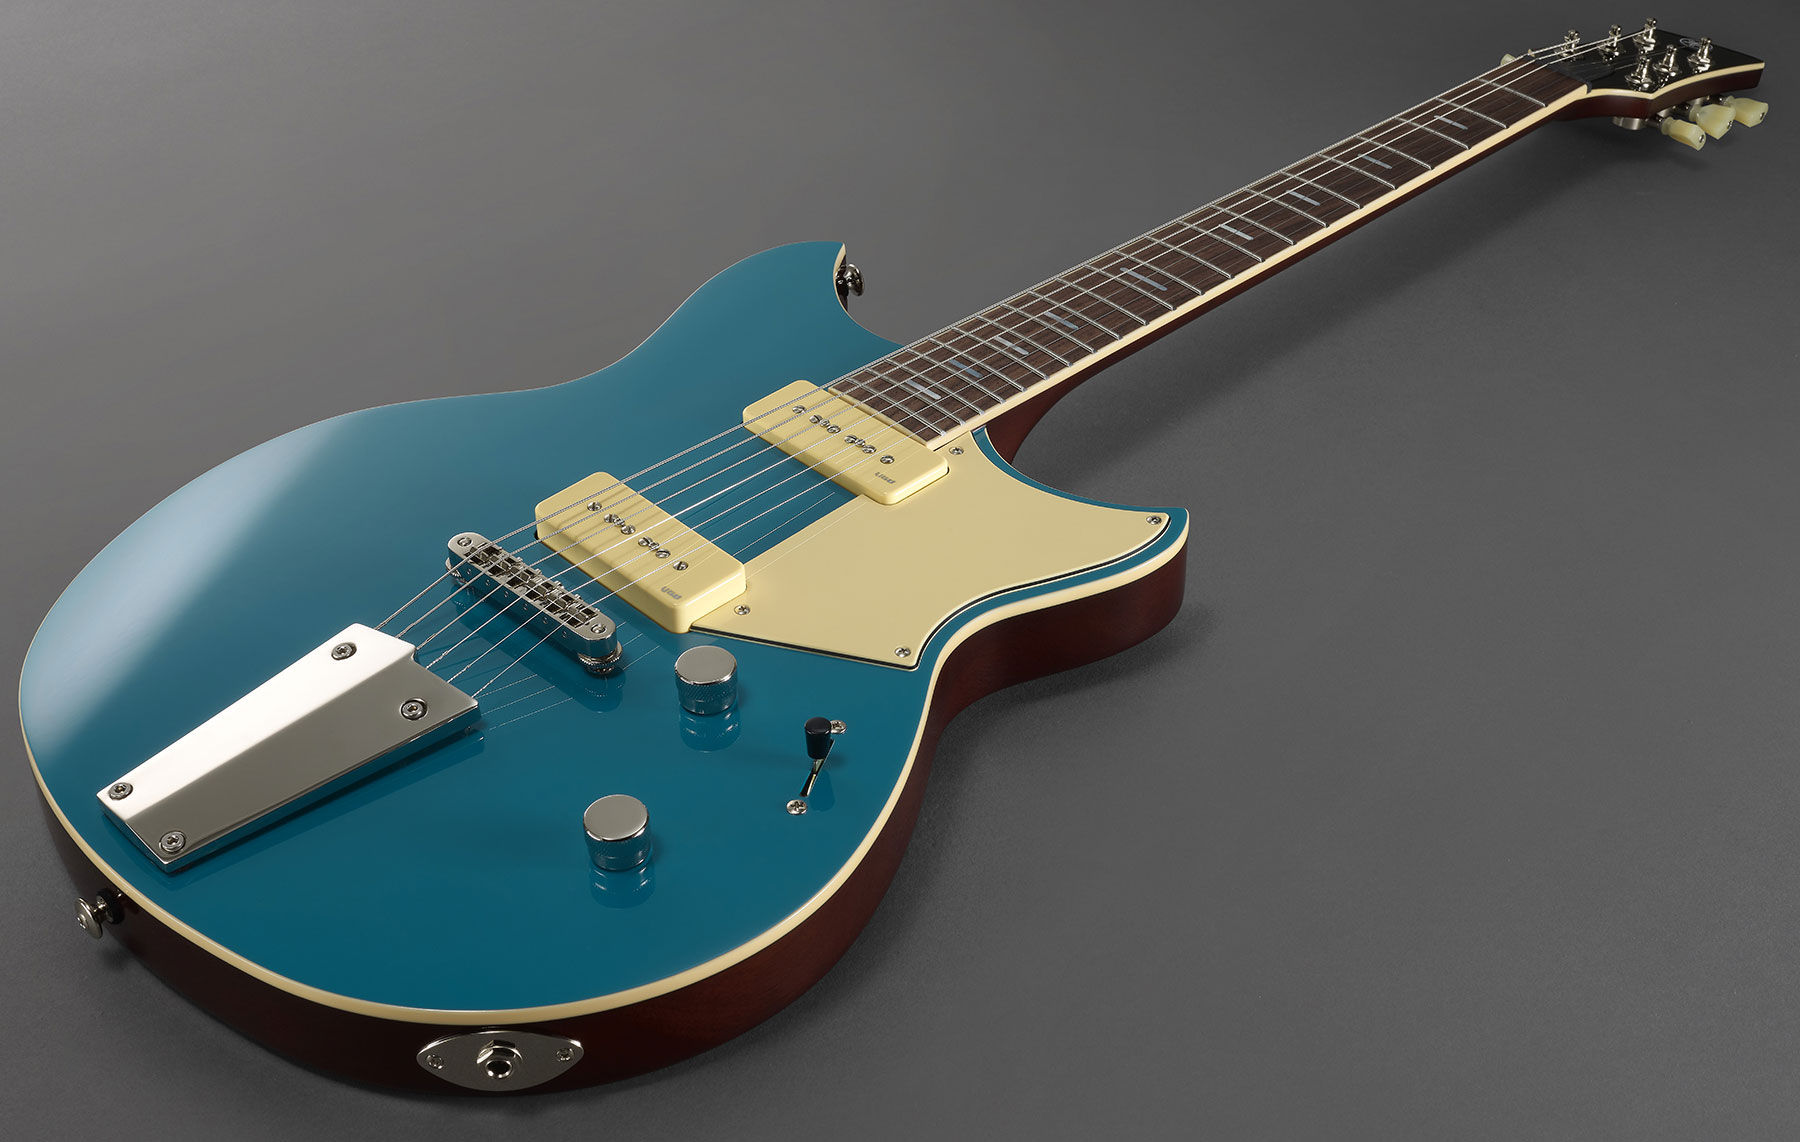 Yamaha Rsp02t Revstar Professionnal Jap 2p90 Ht Rw - Swift Blue - Guitarra eléctrica de doble corte. - Variation 3